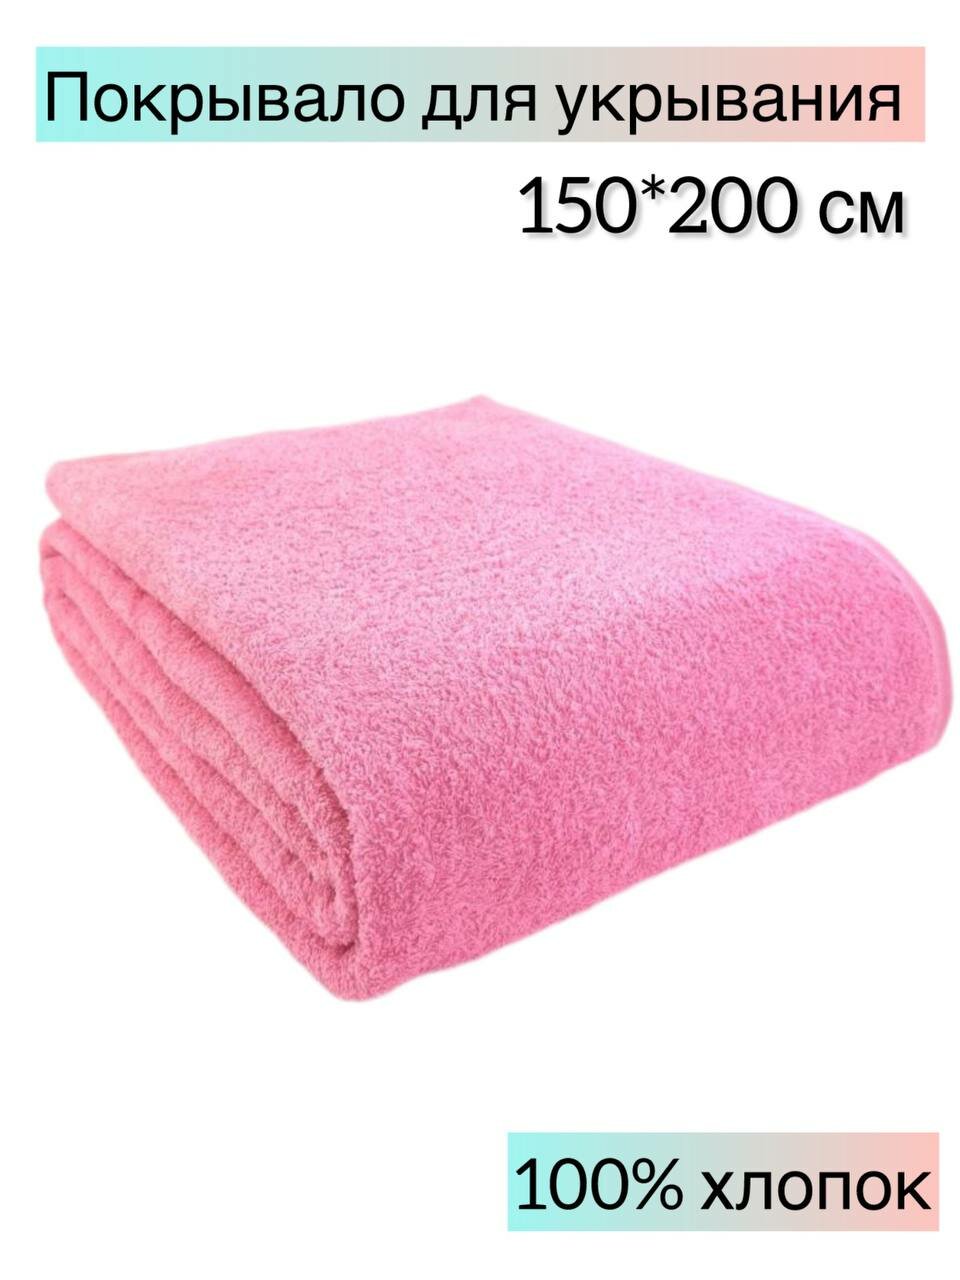 Покрывало махровое 150x200 см, пляжное покрывало, одеяло махровое, плед, покрывало, цвет: розовый